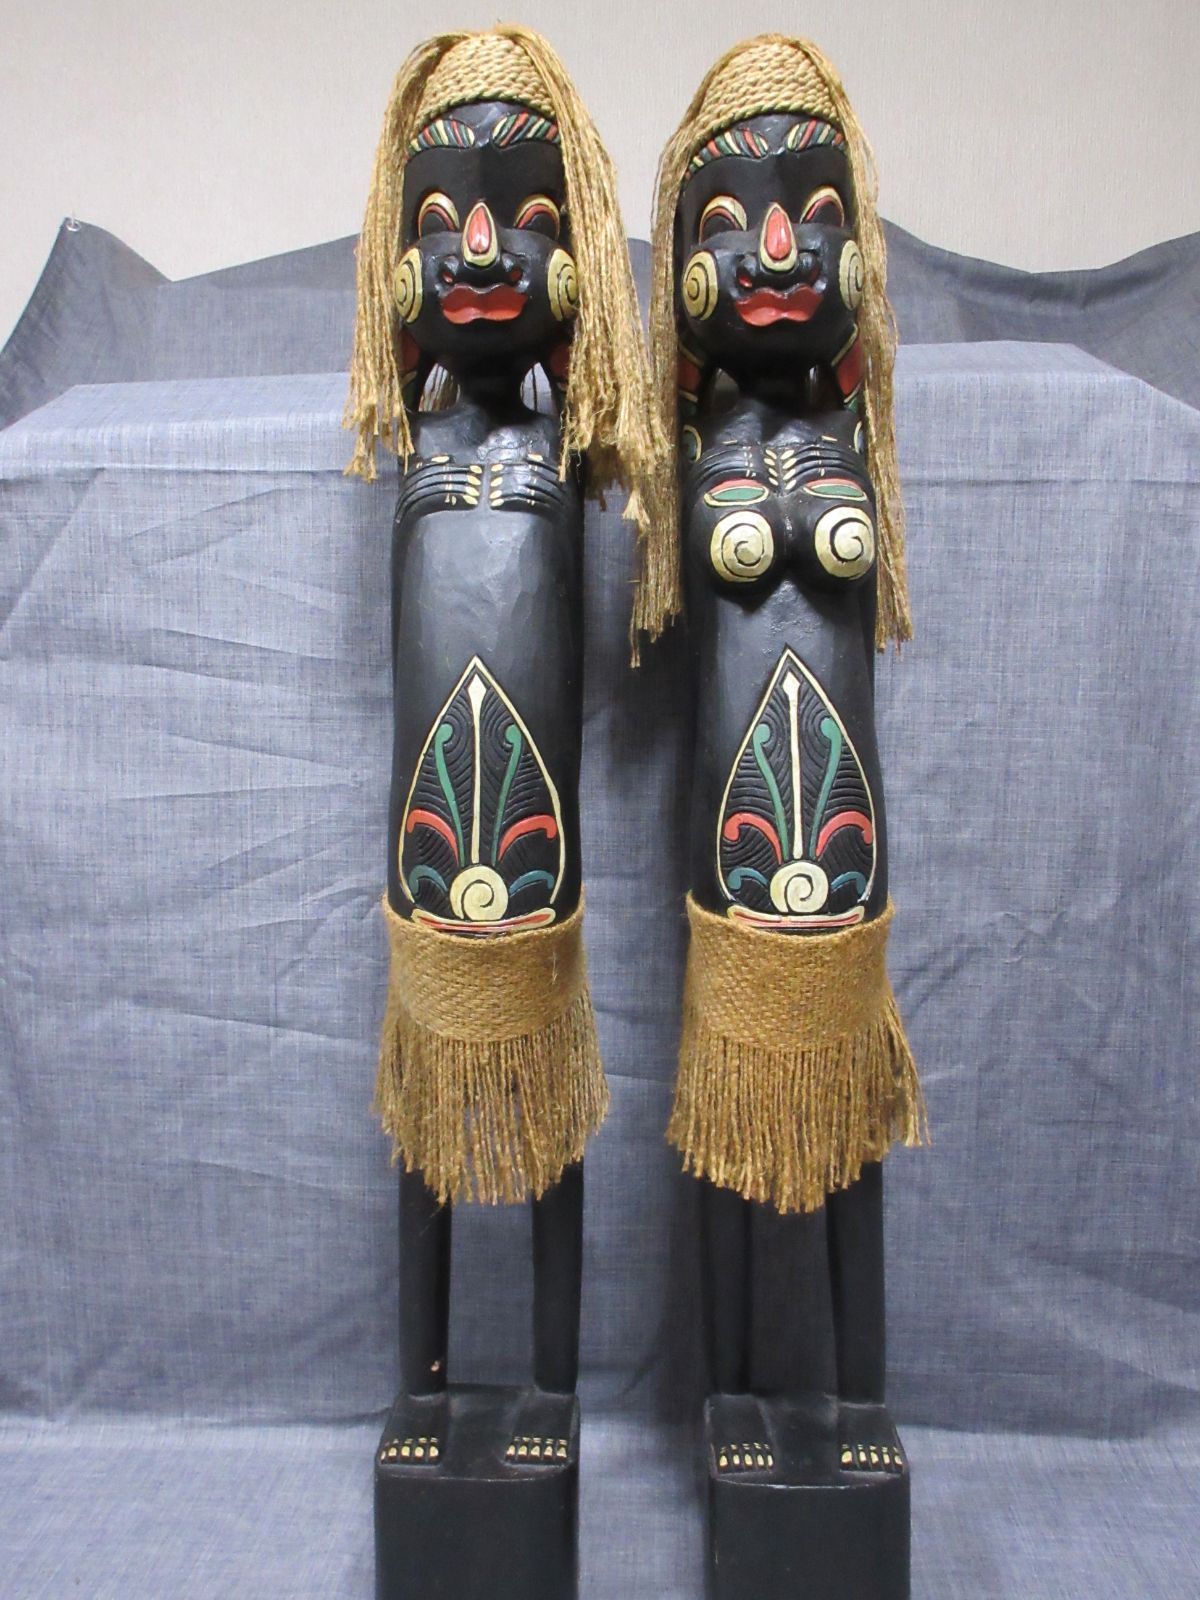 木彫り像 彫刻 置物 アフリカ 原住民 祭典 魔除 民芸品 夫婦セット